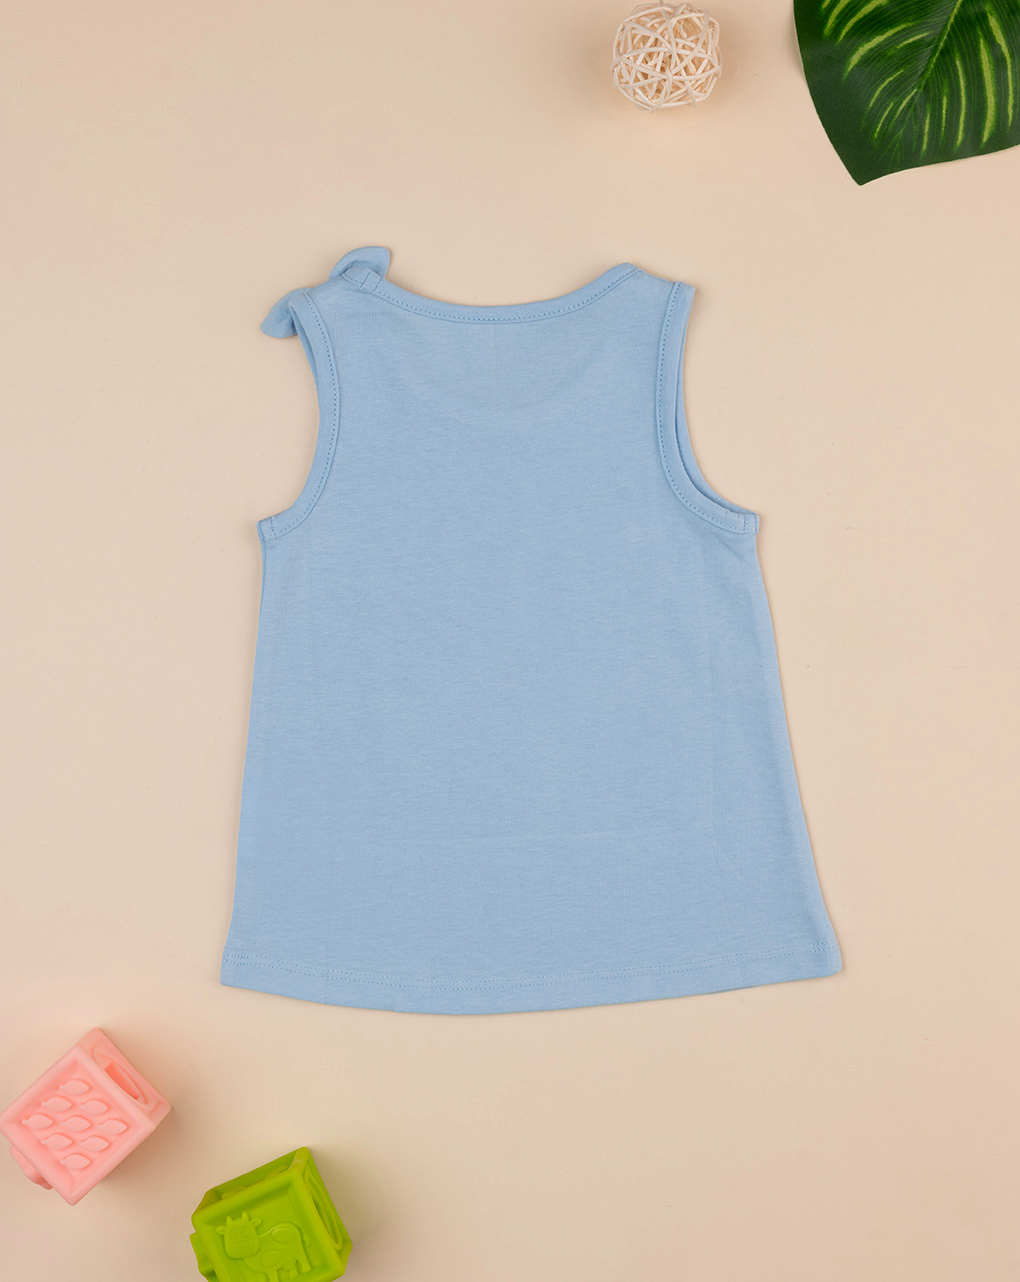 βρεφική αμάνικη μπλούζα γαλάζια με μαργαρίτα για κορίτσι - Prénatal